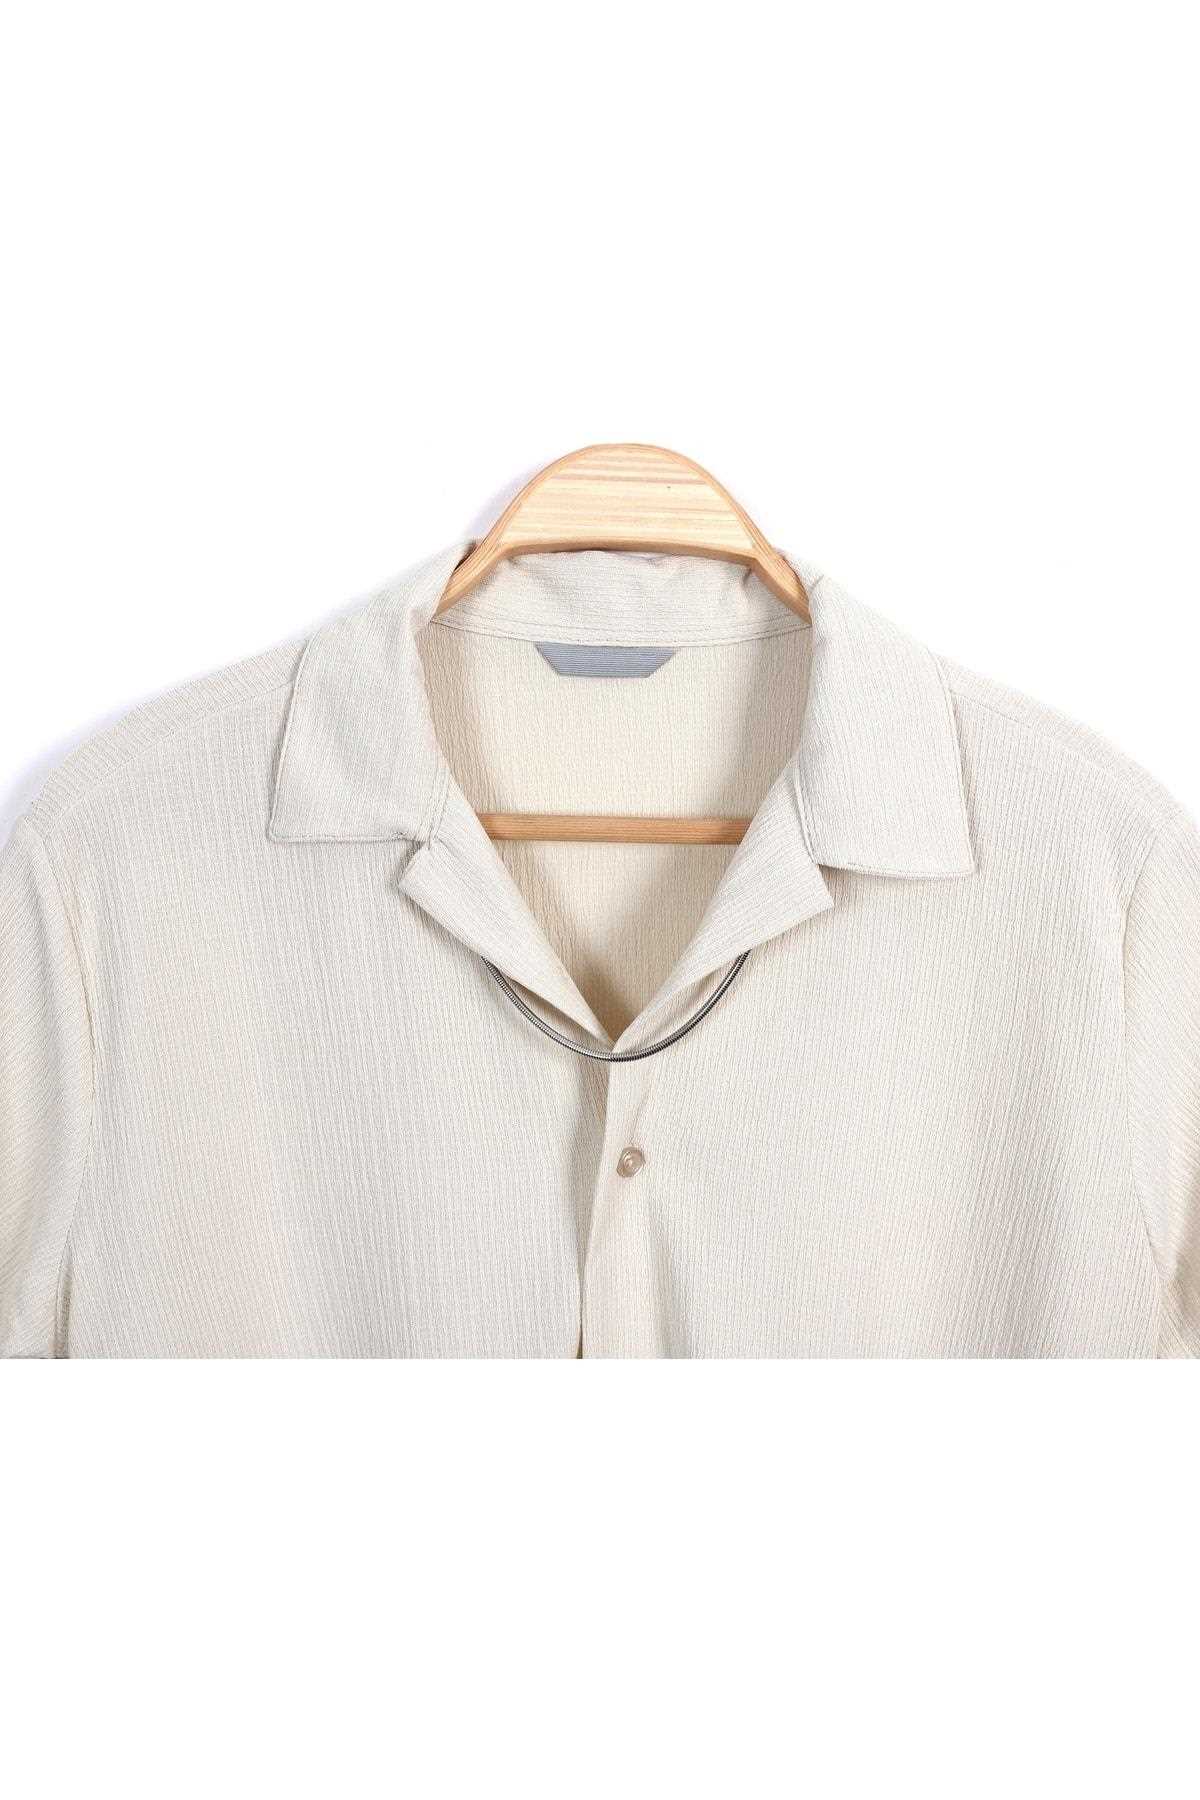 پیراهن آستین کوتاه مردانه طرح جدید مارک sopron outdoors کرمی ty300775159